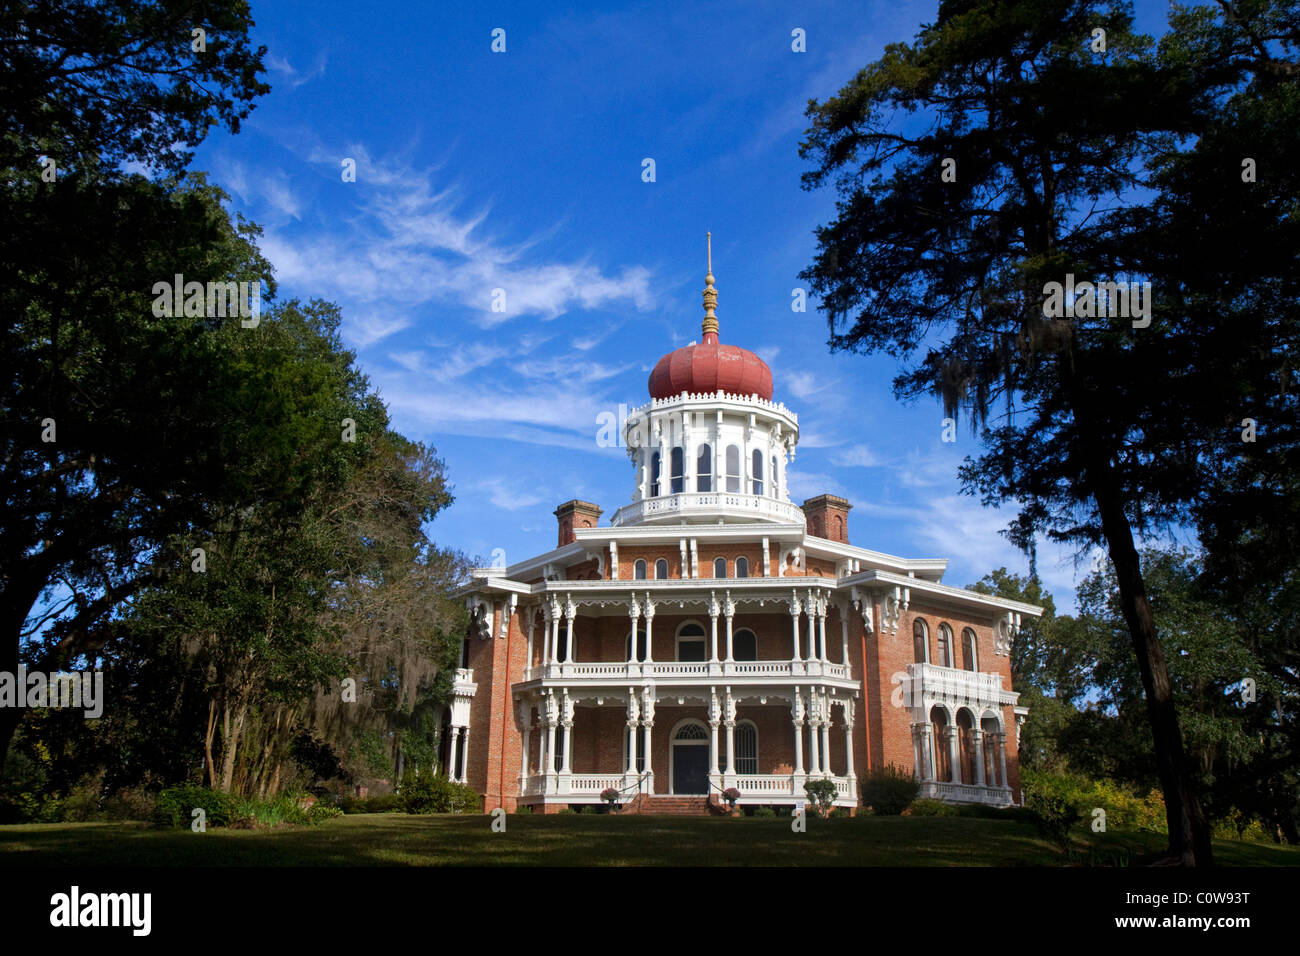 Historique de Longwood antebellum mansion octogonal situé dans la région de Natchez, Mississippi, USA. Banque D'Images